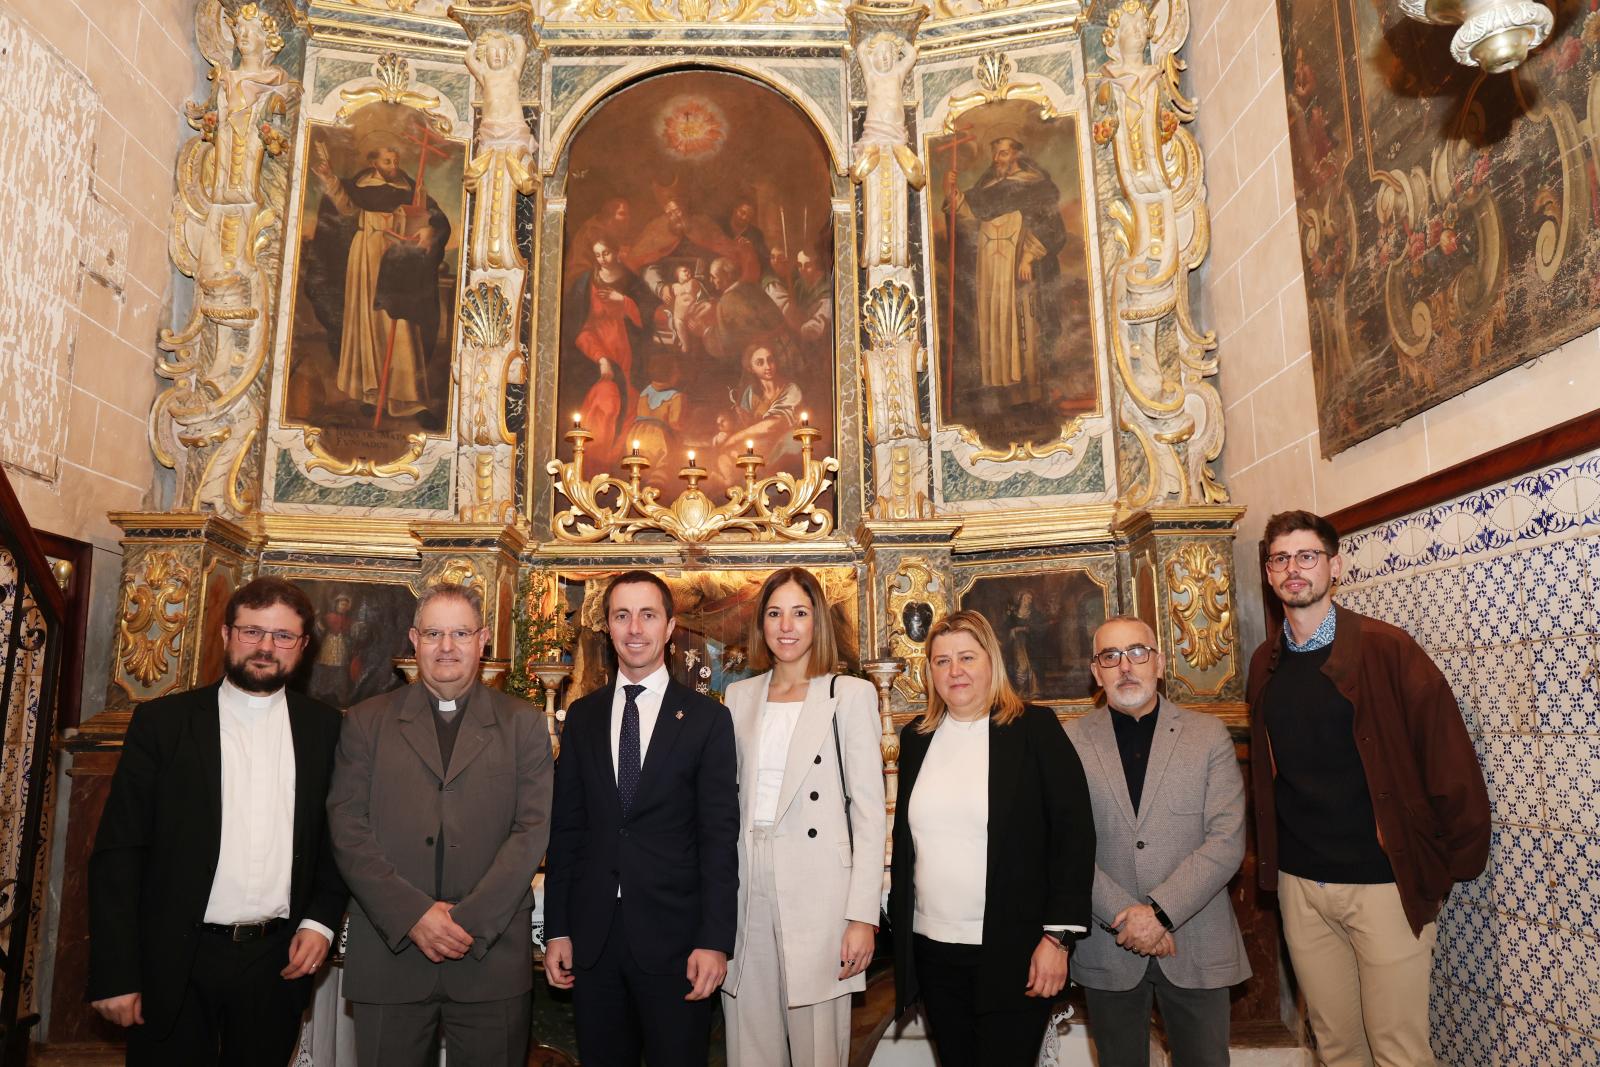 Consell i Bisbat de Mallorca presenten la restauració de tres teles pictòriques del segle XVII i XVIII